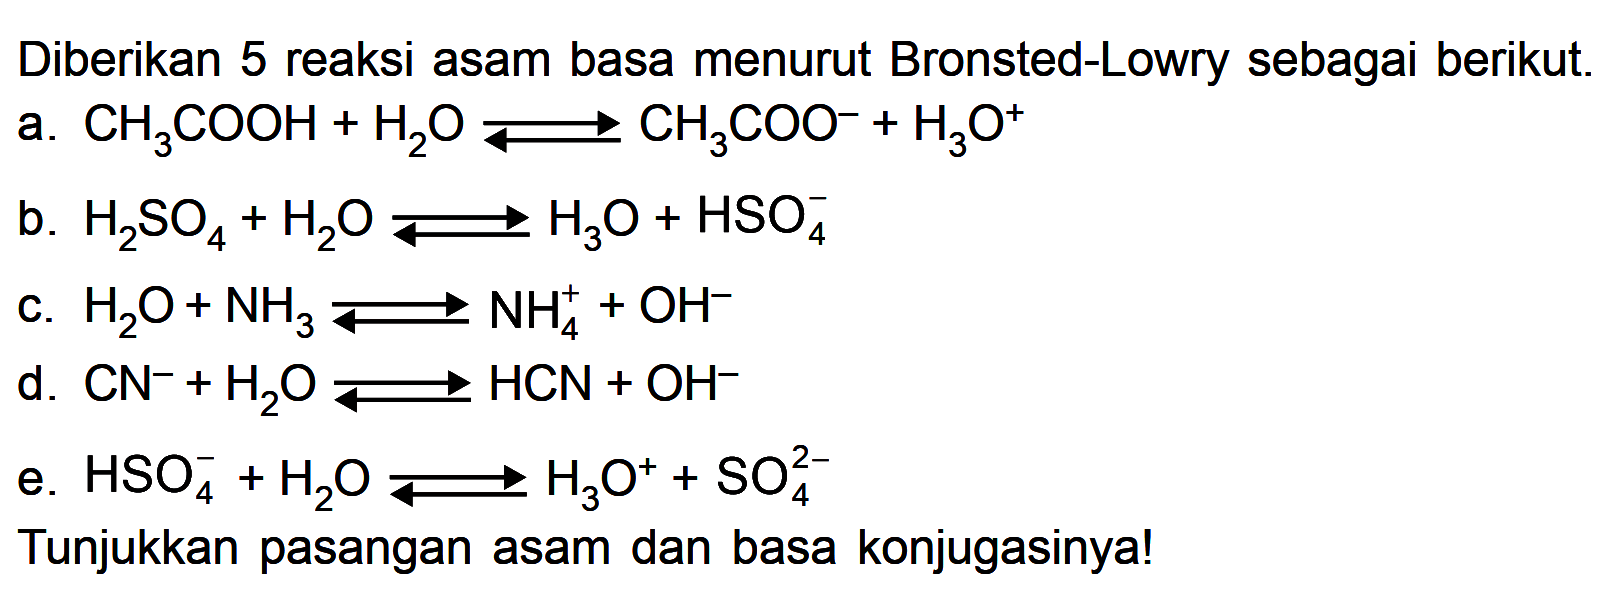 Diberikan 5 reaksi asam basa menurut Bronsted-Lowry sebagai berikut.
a.  CH3COOH+H2O <=> CH3COO^(-)+H3O^+ 
b.  H2SO4+H2O <=> H3O+HSO4^(-) 
c.  H2O+NH3 <=> NH4^(+)+OH^(-) 
d.  CN^(-)+H2O <=> HCN+OH^(-) 
e.  HSO4^(-)+H2O <=> H3O^(+)+SO4^2- 
Tunjukkan pasangan asam dan basa konjugasinya!